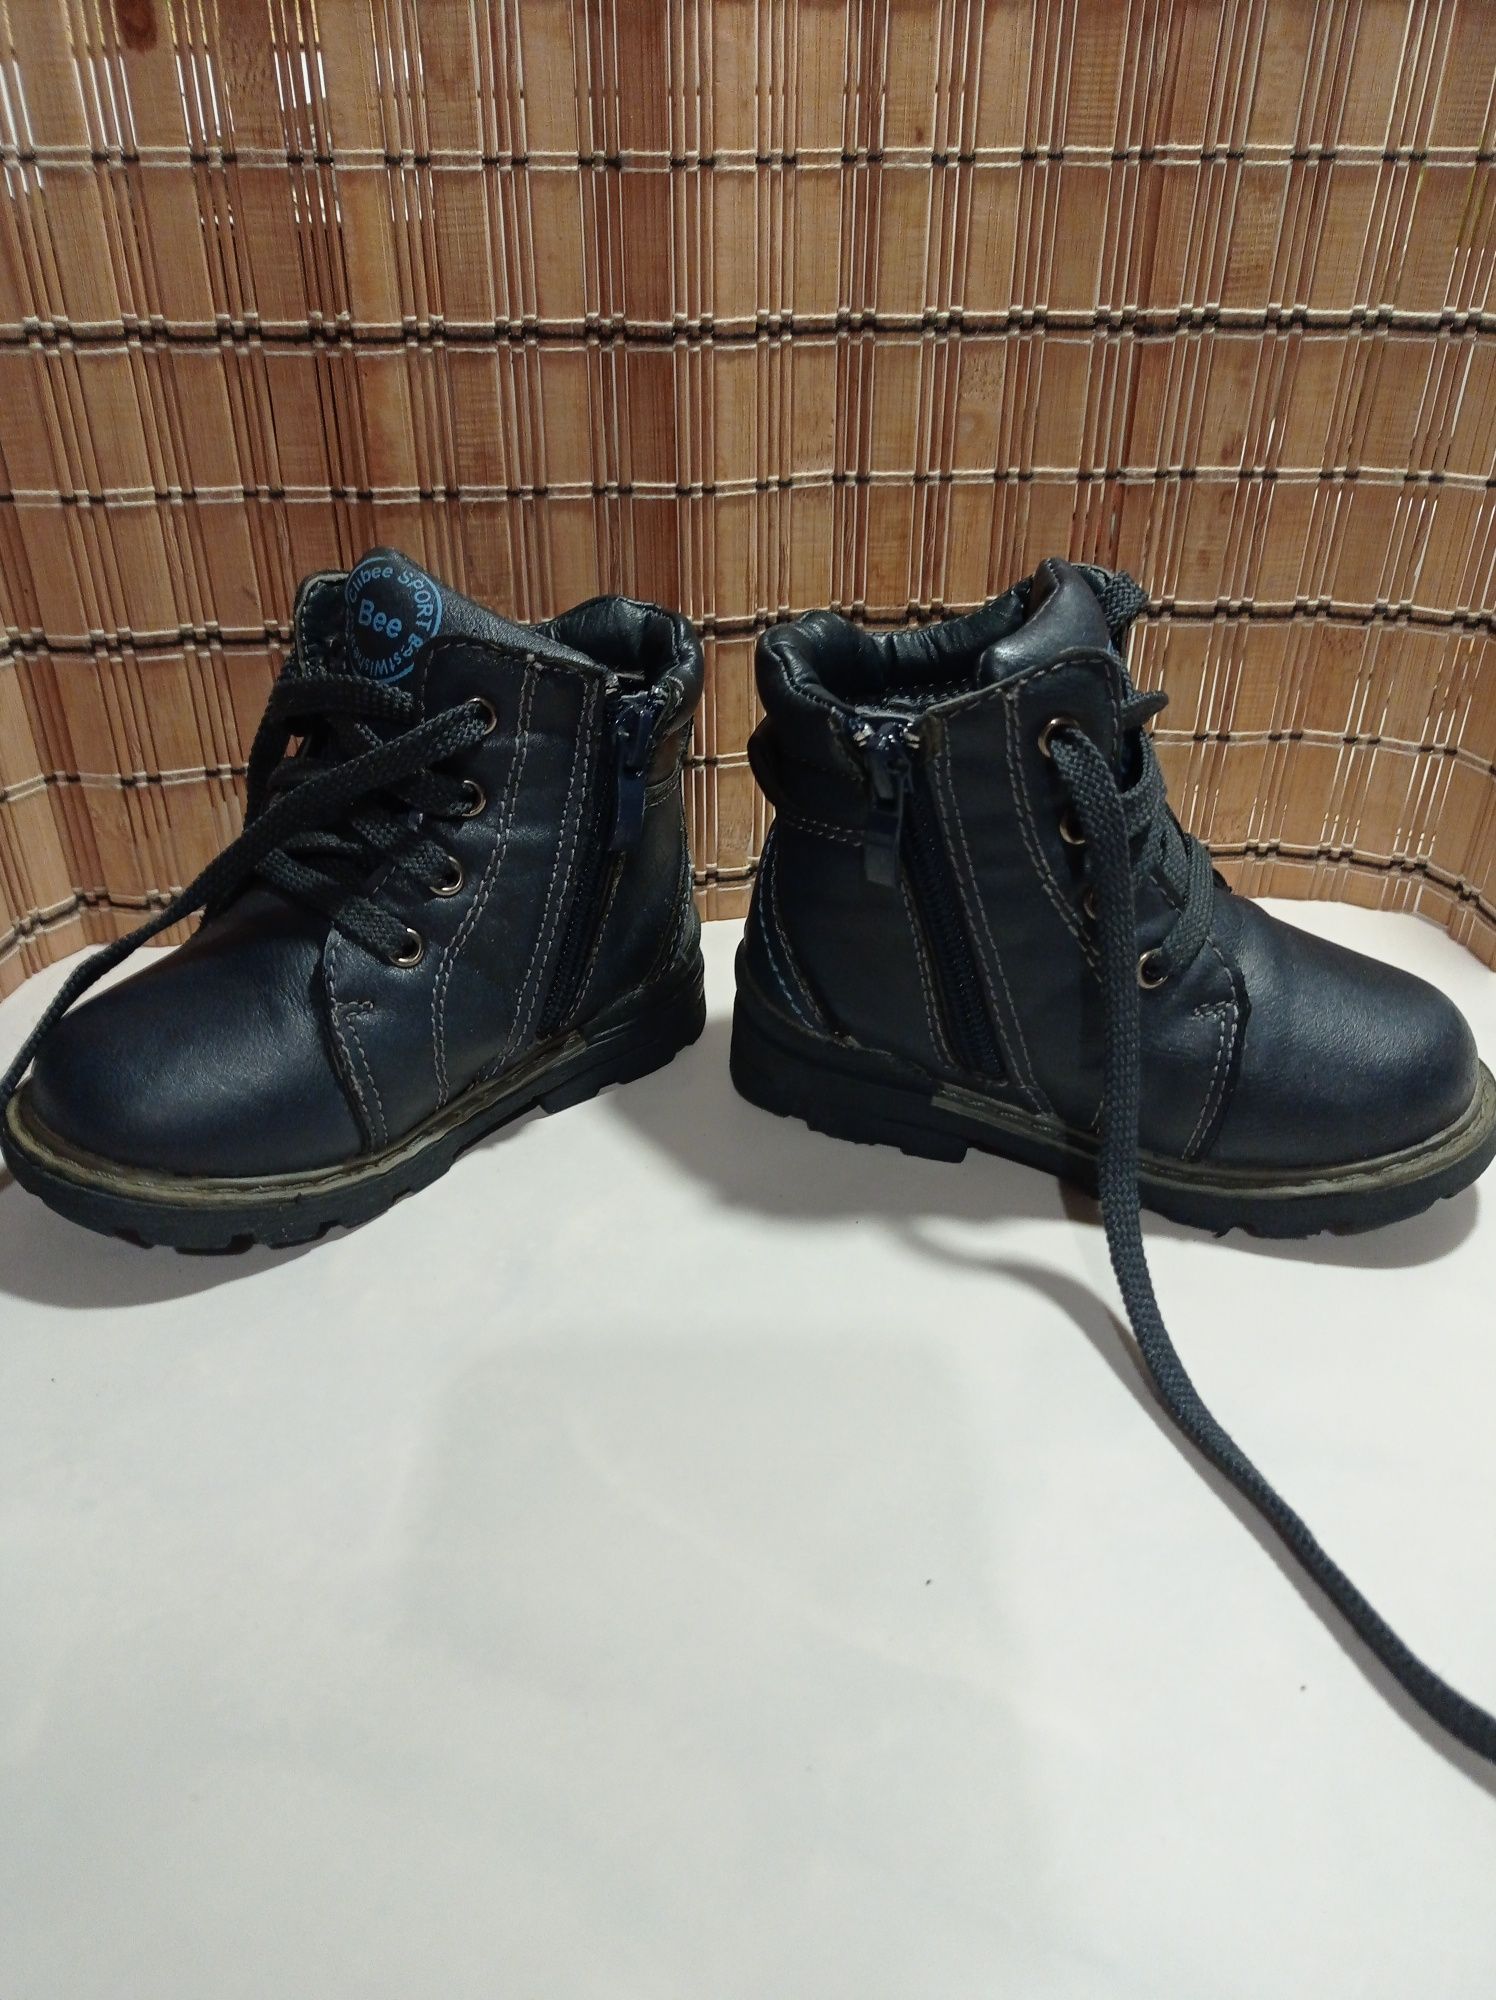 Ботинки сапожки на зиму 22 размер